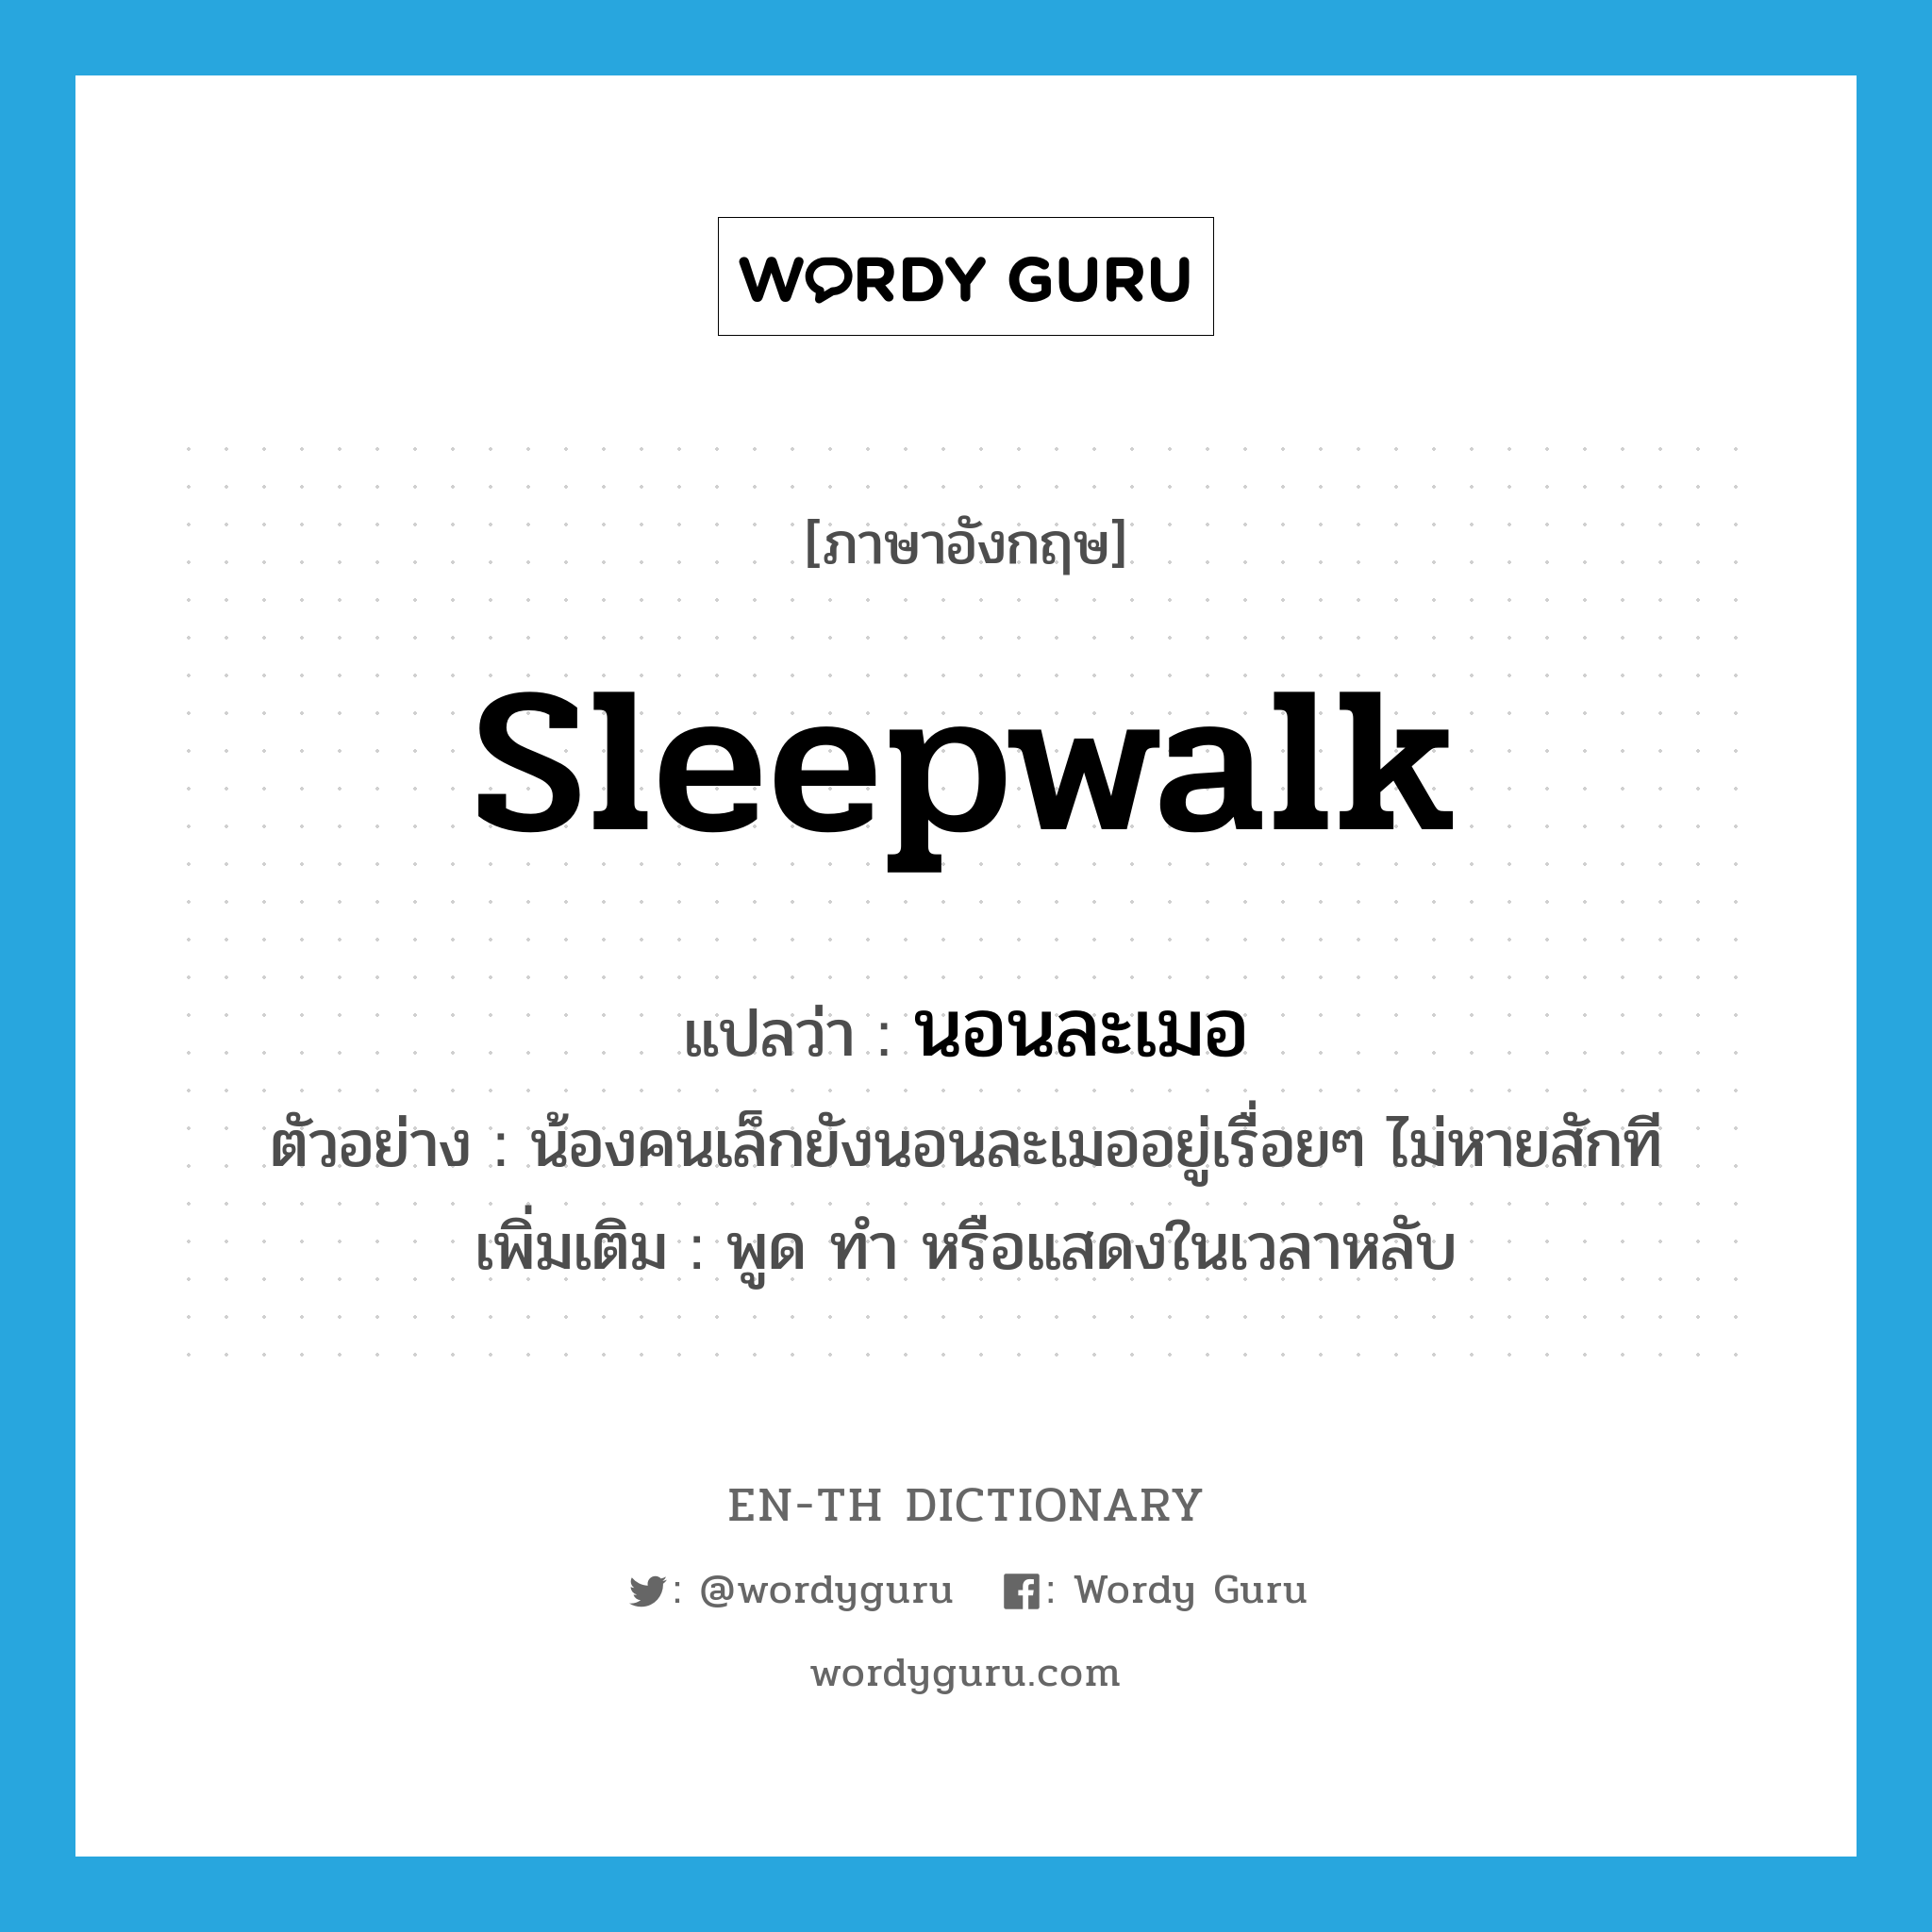 นอนละเมอ ภาษาอังกฤษ?, คำศัพท์ภาษาอังกฤษ นอนละเมอ แปลว่า sleepwalk ประเภท V ตัวอย่าง น้องคนเล็กยังนอนละเมออยู่เรื่อยๆ ไม่หายสักที เพิ่มเติม พูด ทำ หรือแสดงในเวลาหลับ หมวด V